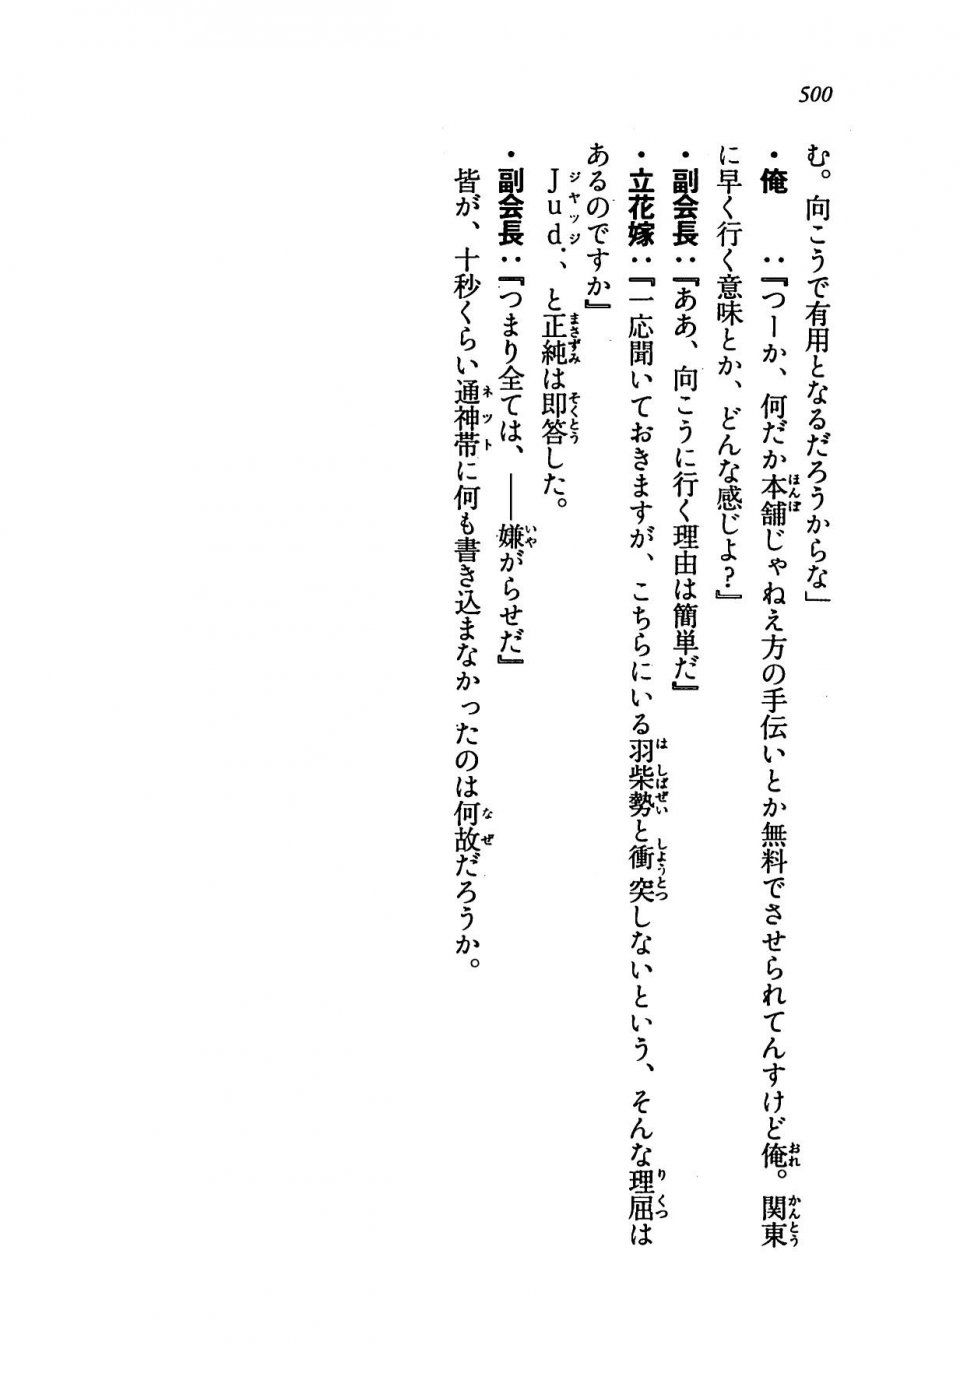 Kyoukai Senjou no Horizon LN Vol 19(8A) - Photo #500